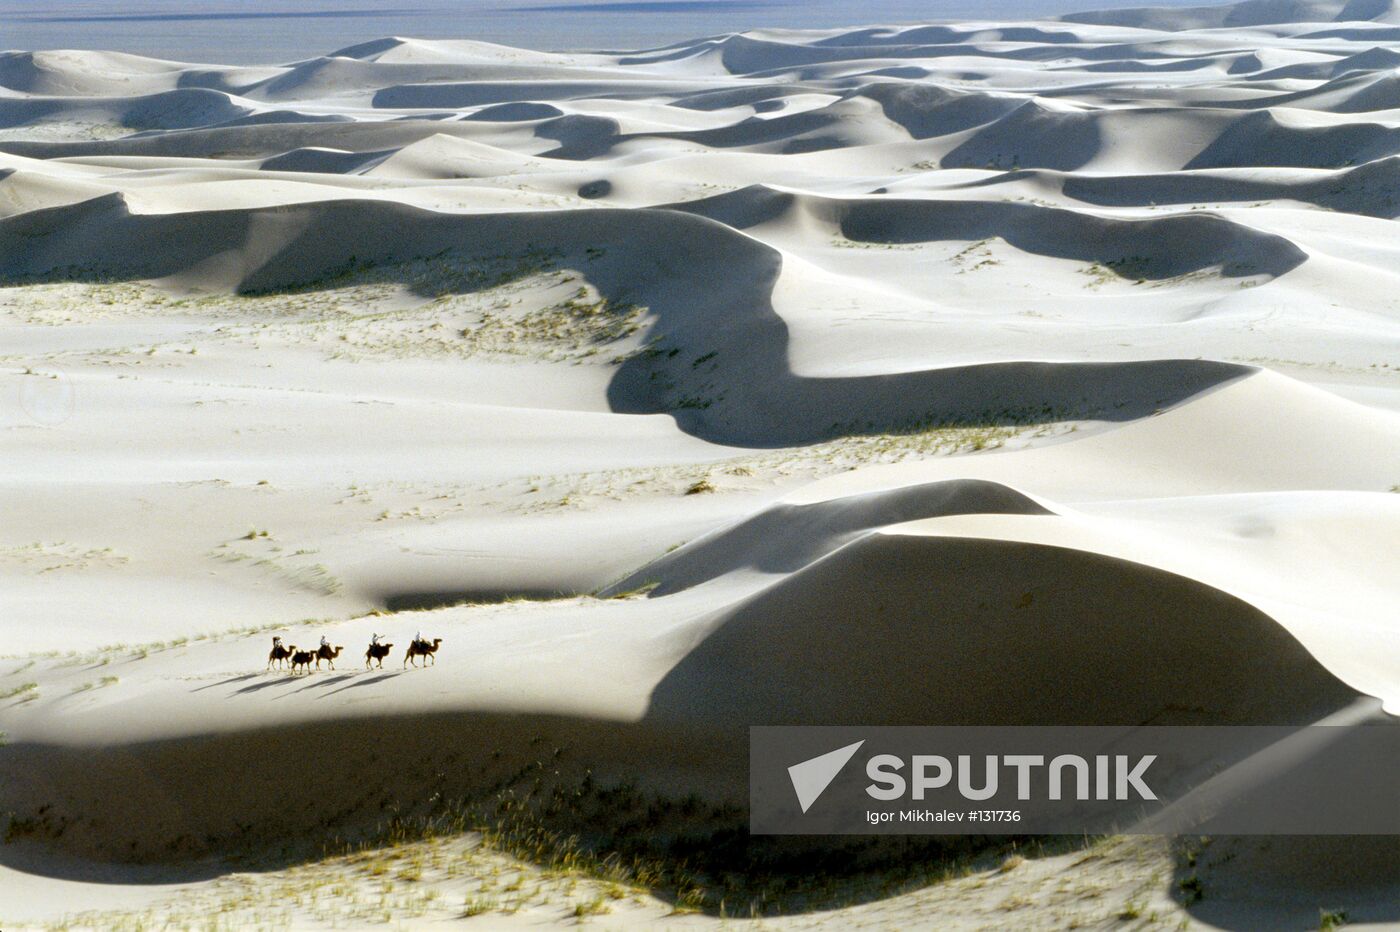 GOBI DESERT MONGOLIA